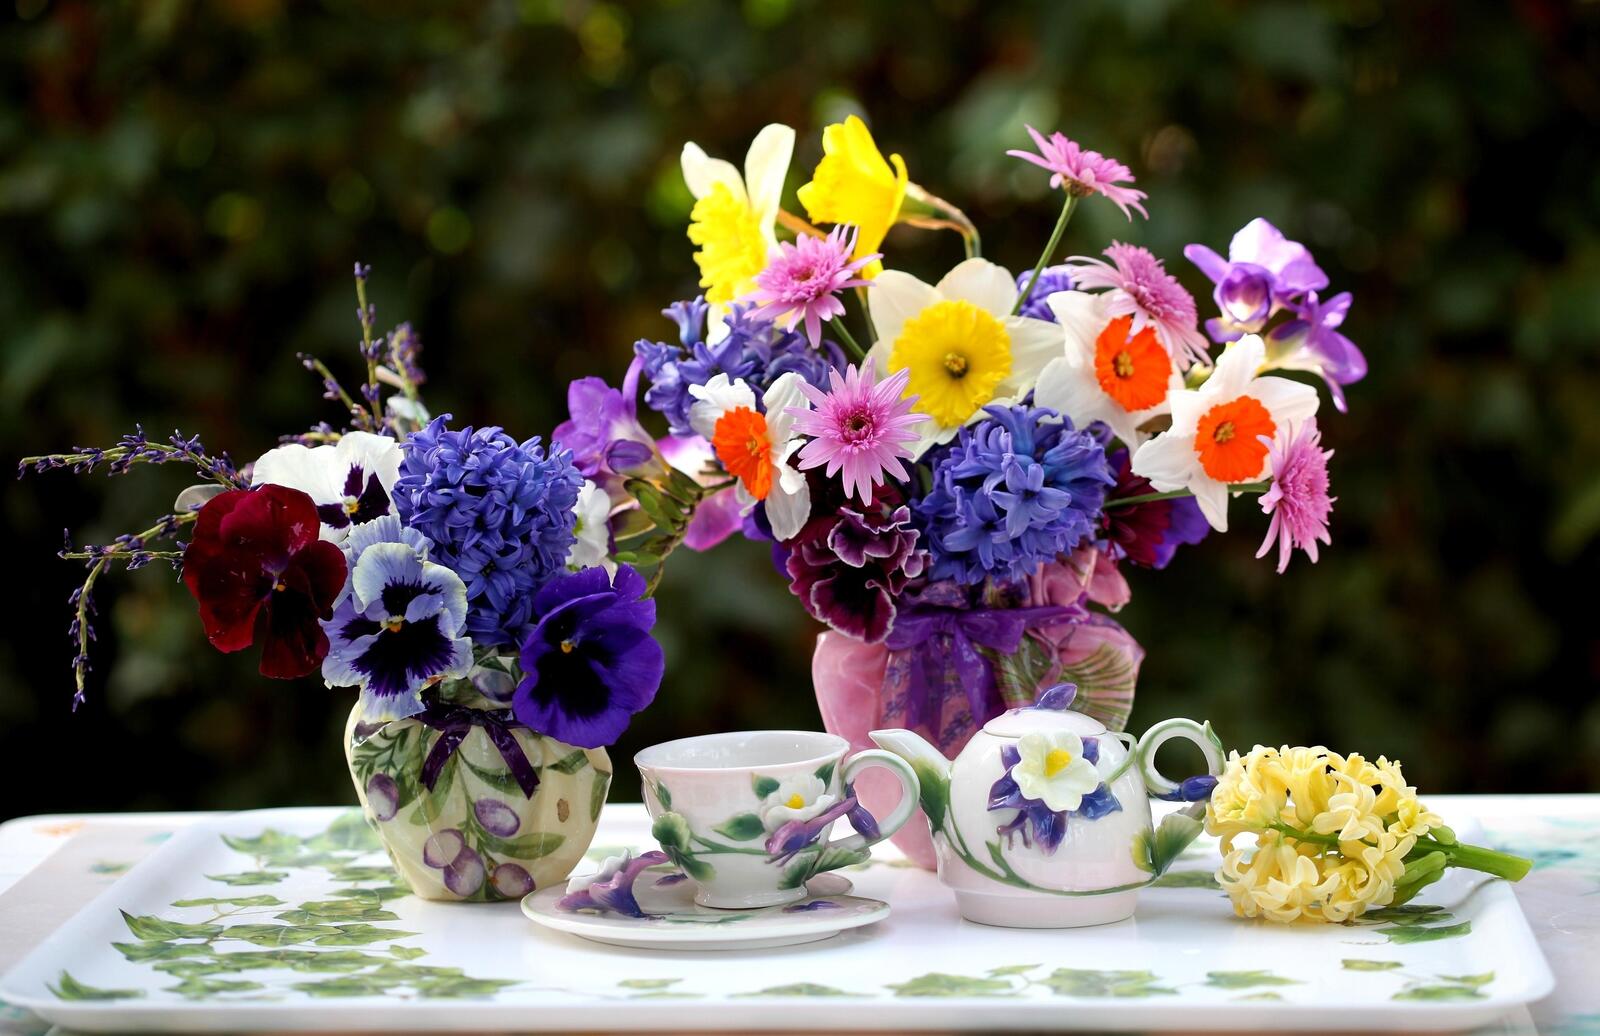 Бесплатное фото Изображение с двумя вазами цветов на обеденном столе